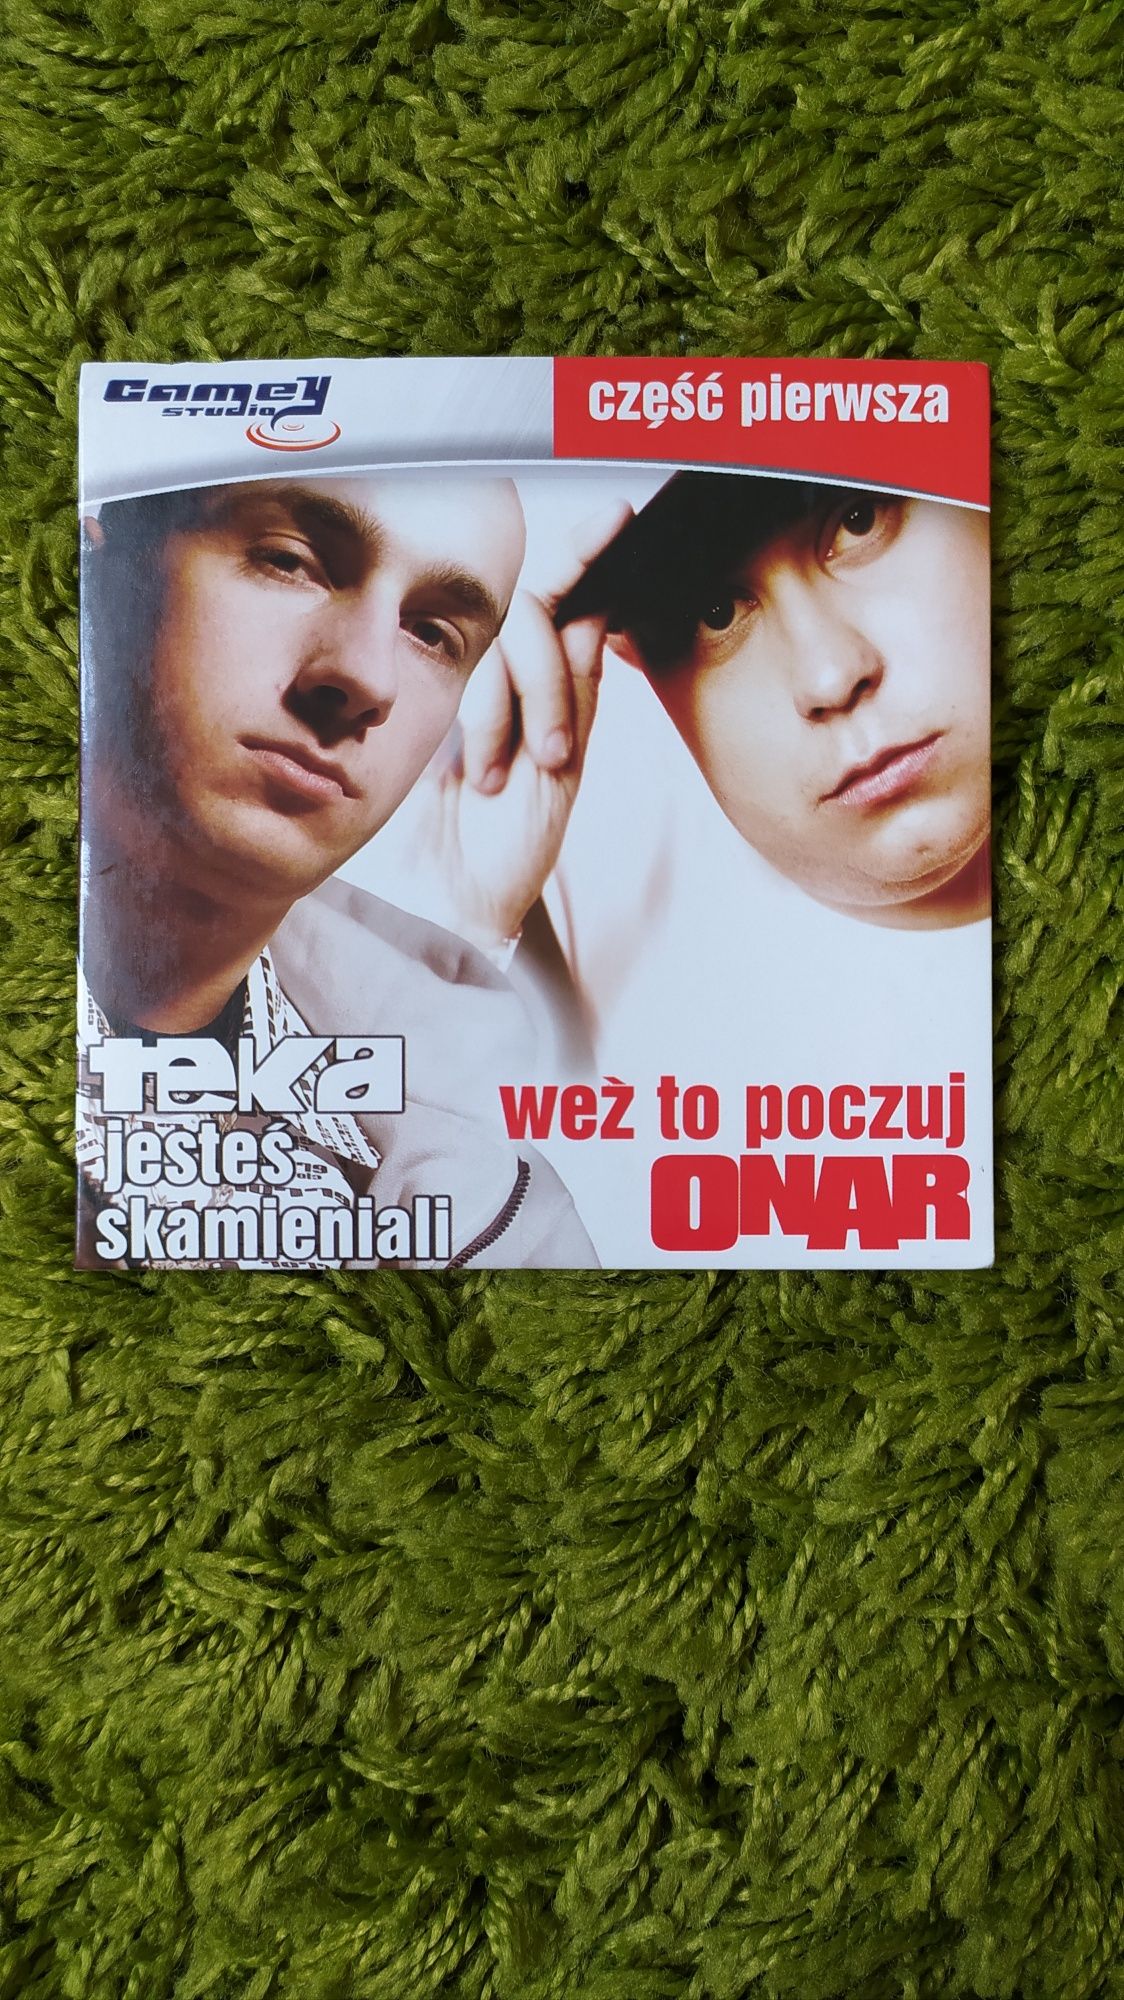 Płyta CD- Onar- Weź to poczuj/ Teka- Skamieniali- Unikat